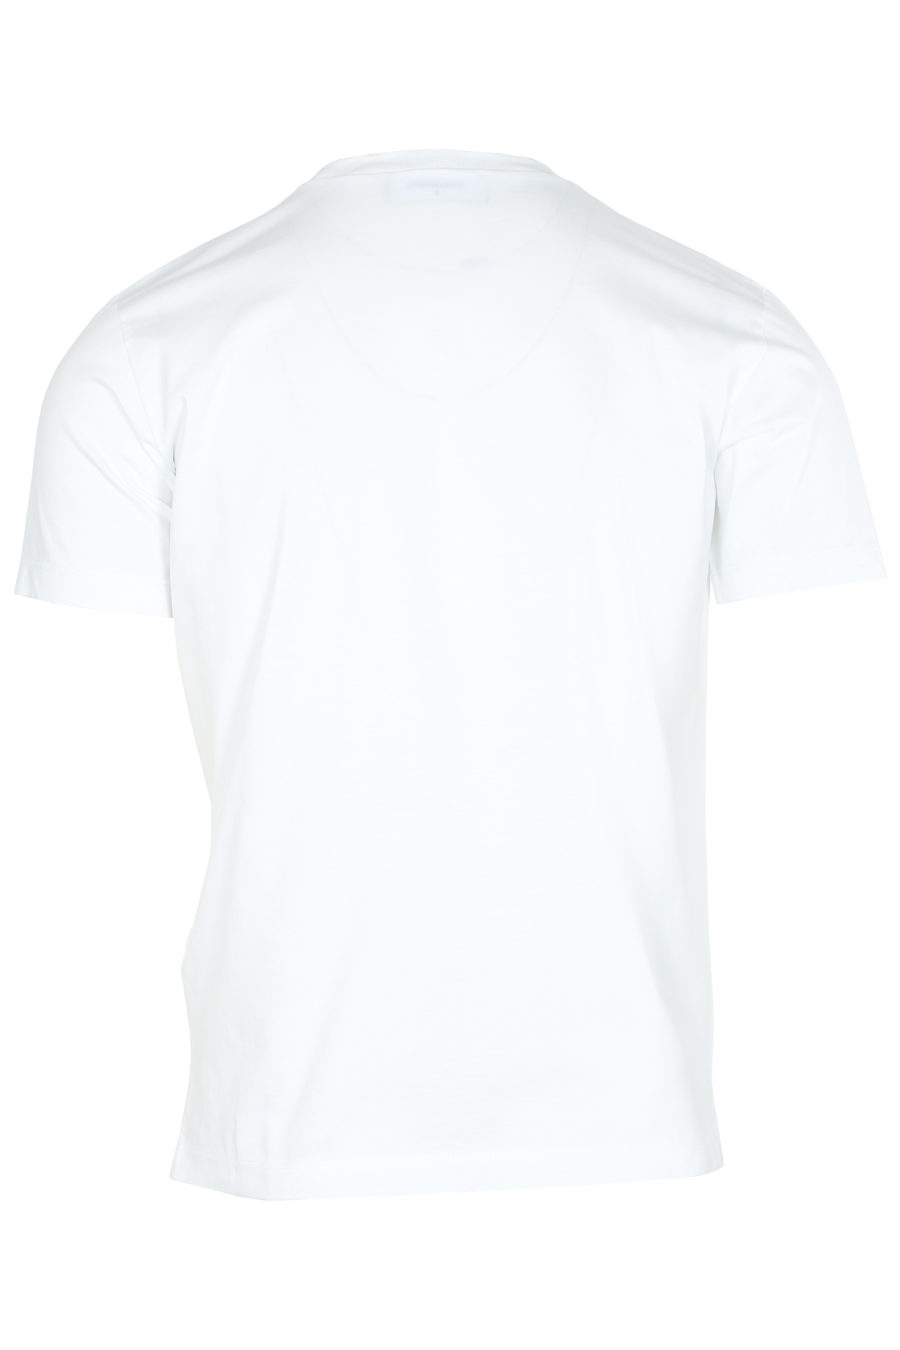 T-shirt branca com logótipo desenhado - IMG 6210